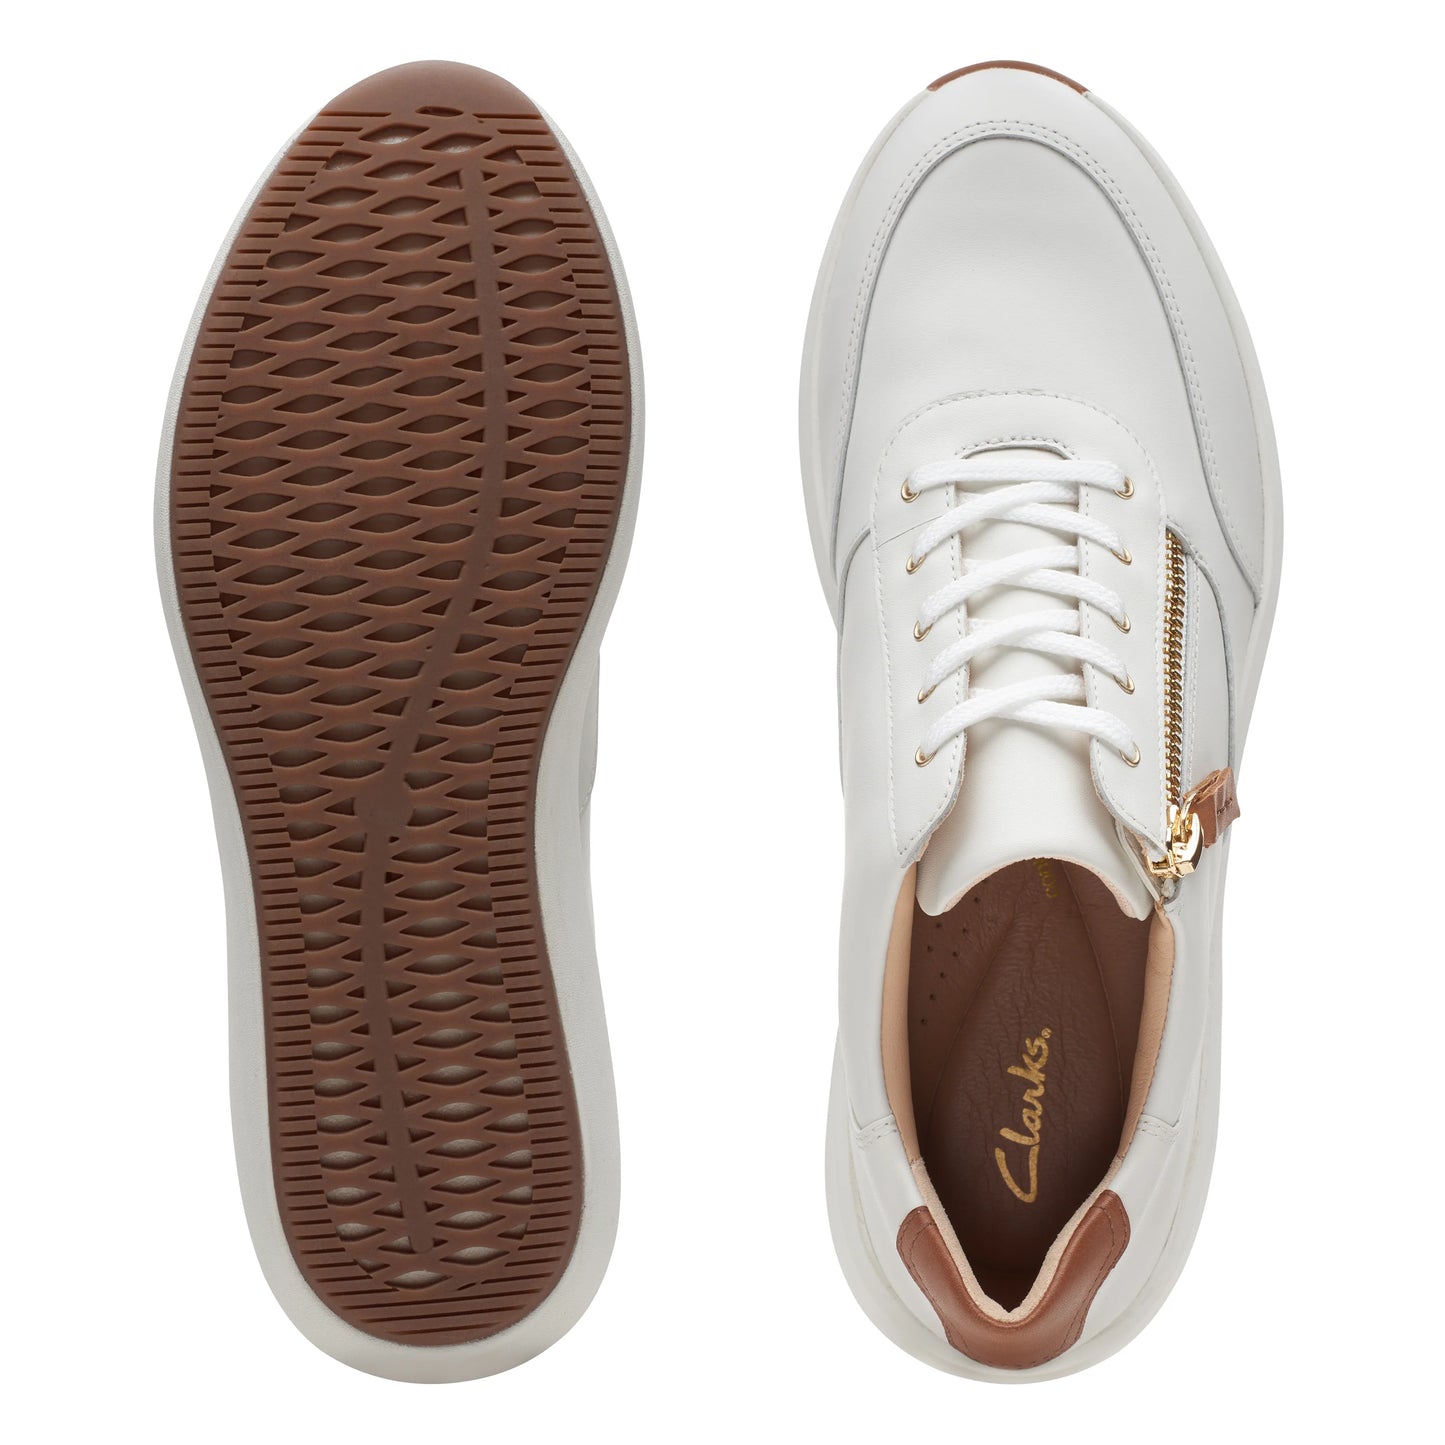 Sneakers De La Marca Clarks Para Mujer Modelo Un Rio Zip White Leather En Color Blanco